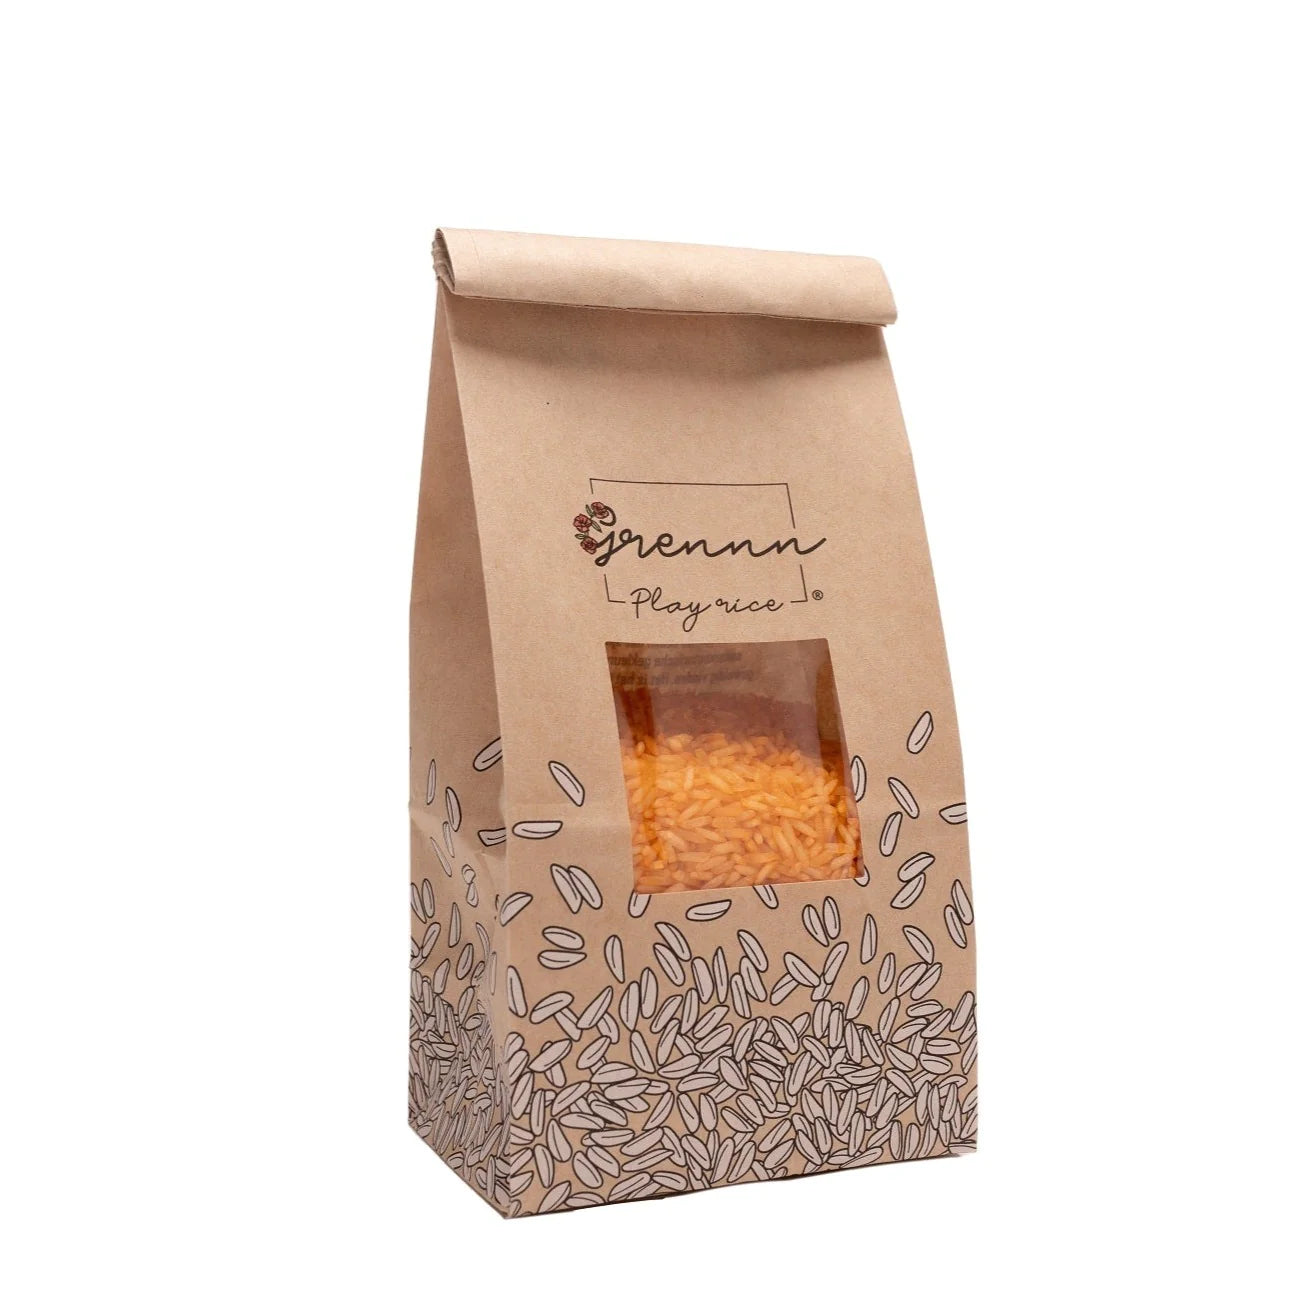 Grennn - Gekleurde sensorische rijst 500 gram - Oranje